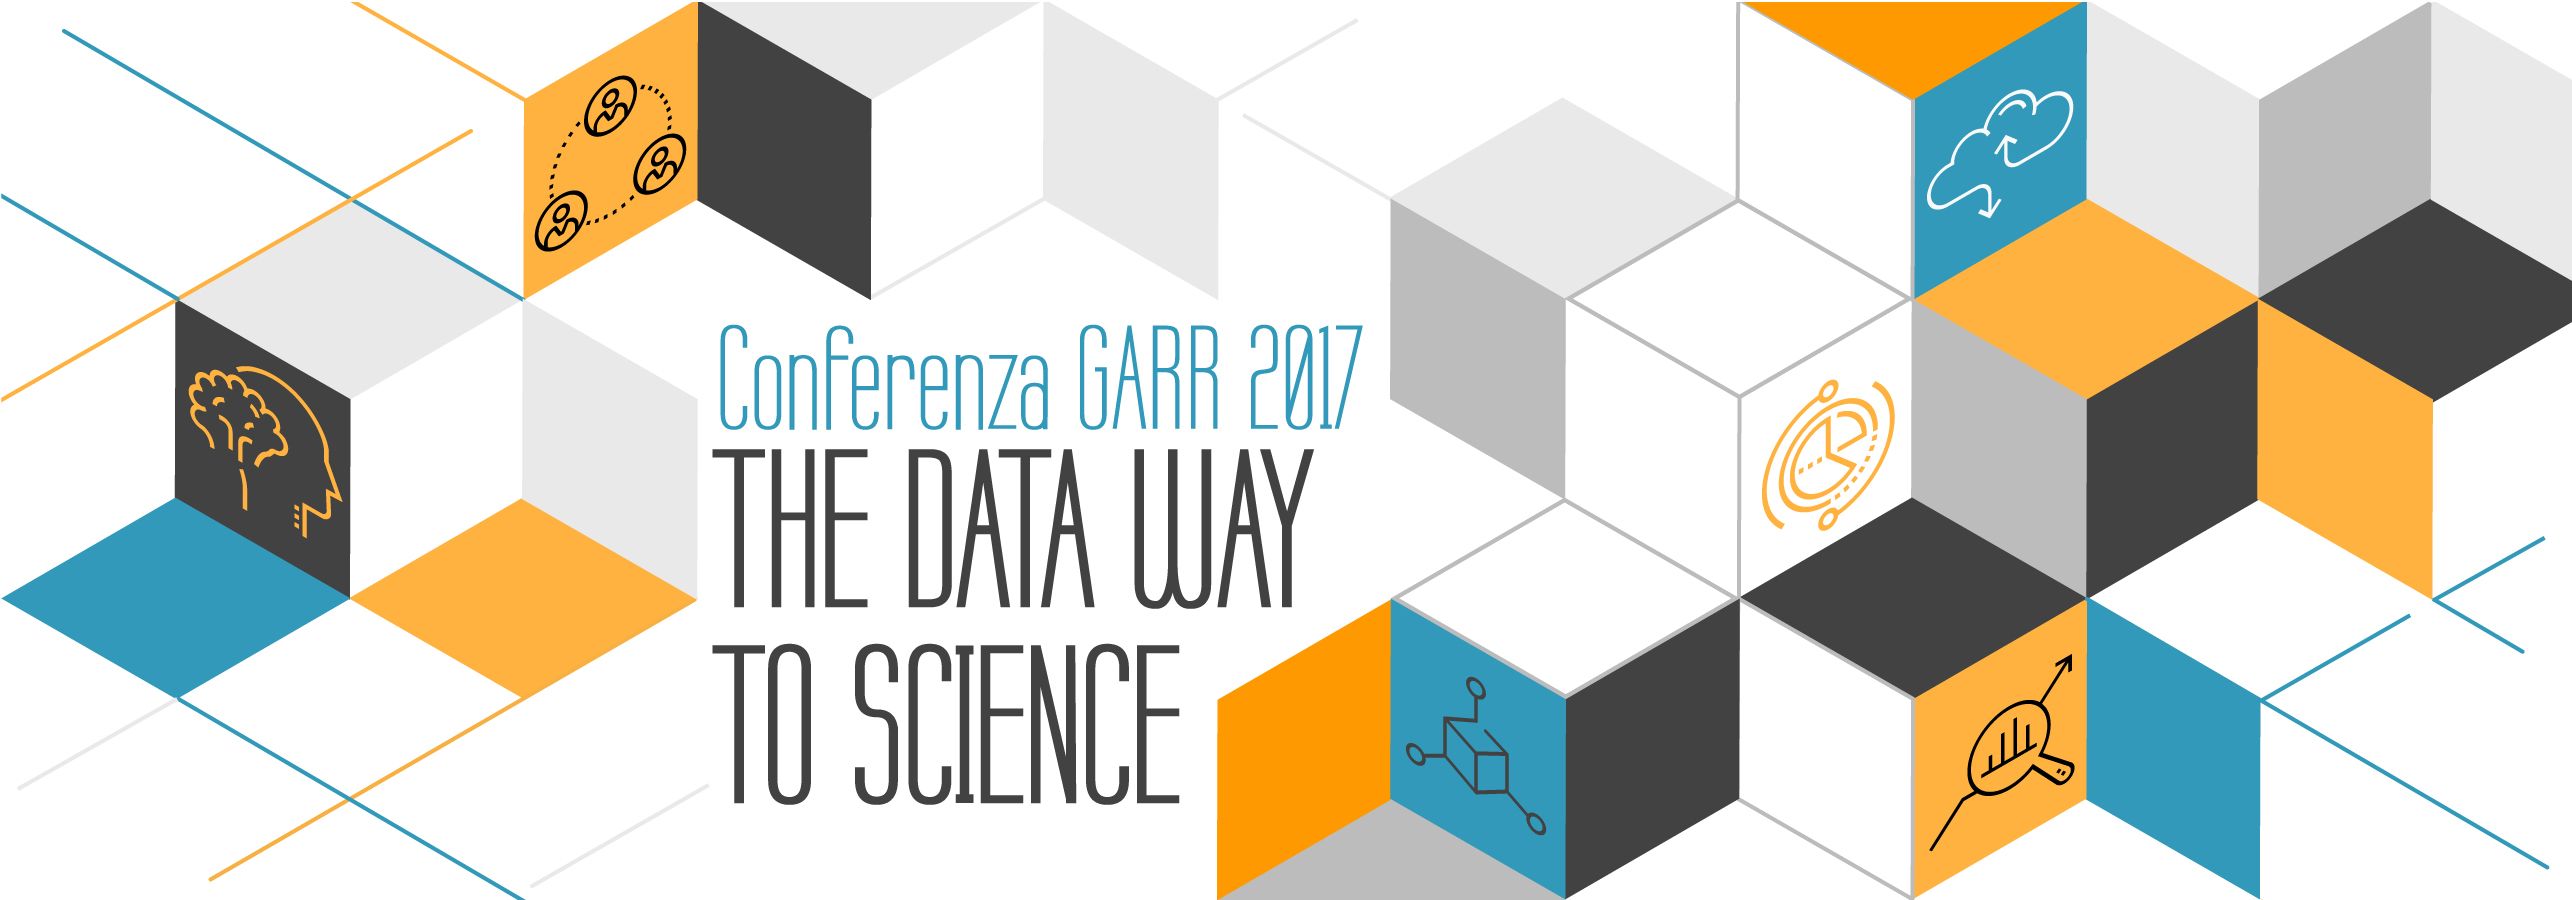 Conferenza GARR 2017